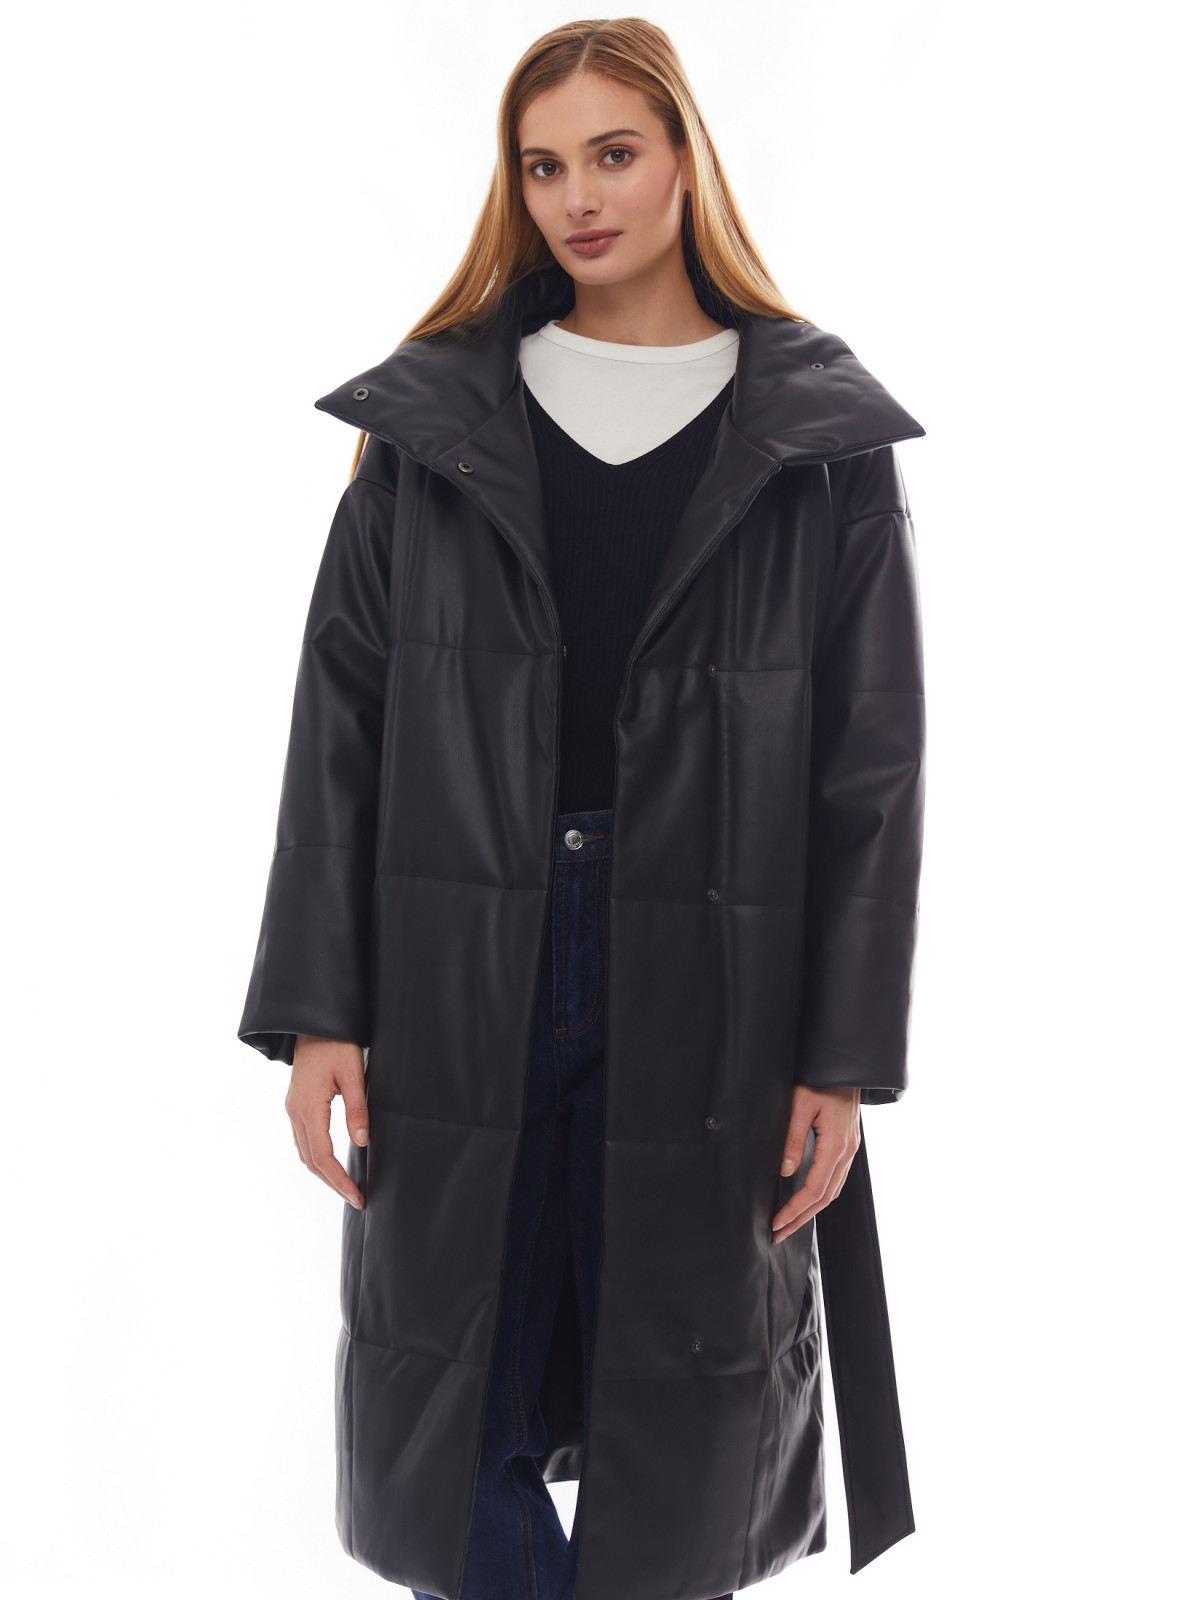 Тёплое пальто из экокожи на синтепоне с воротником-стойкой и поясом zolla 02412522N034, цвет черный, размер XS - фото 1